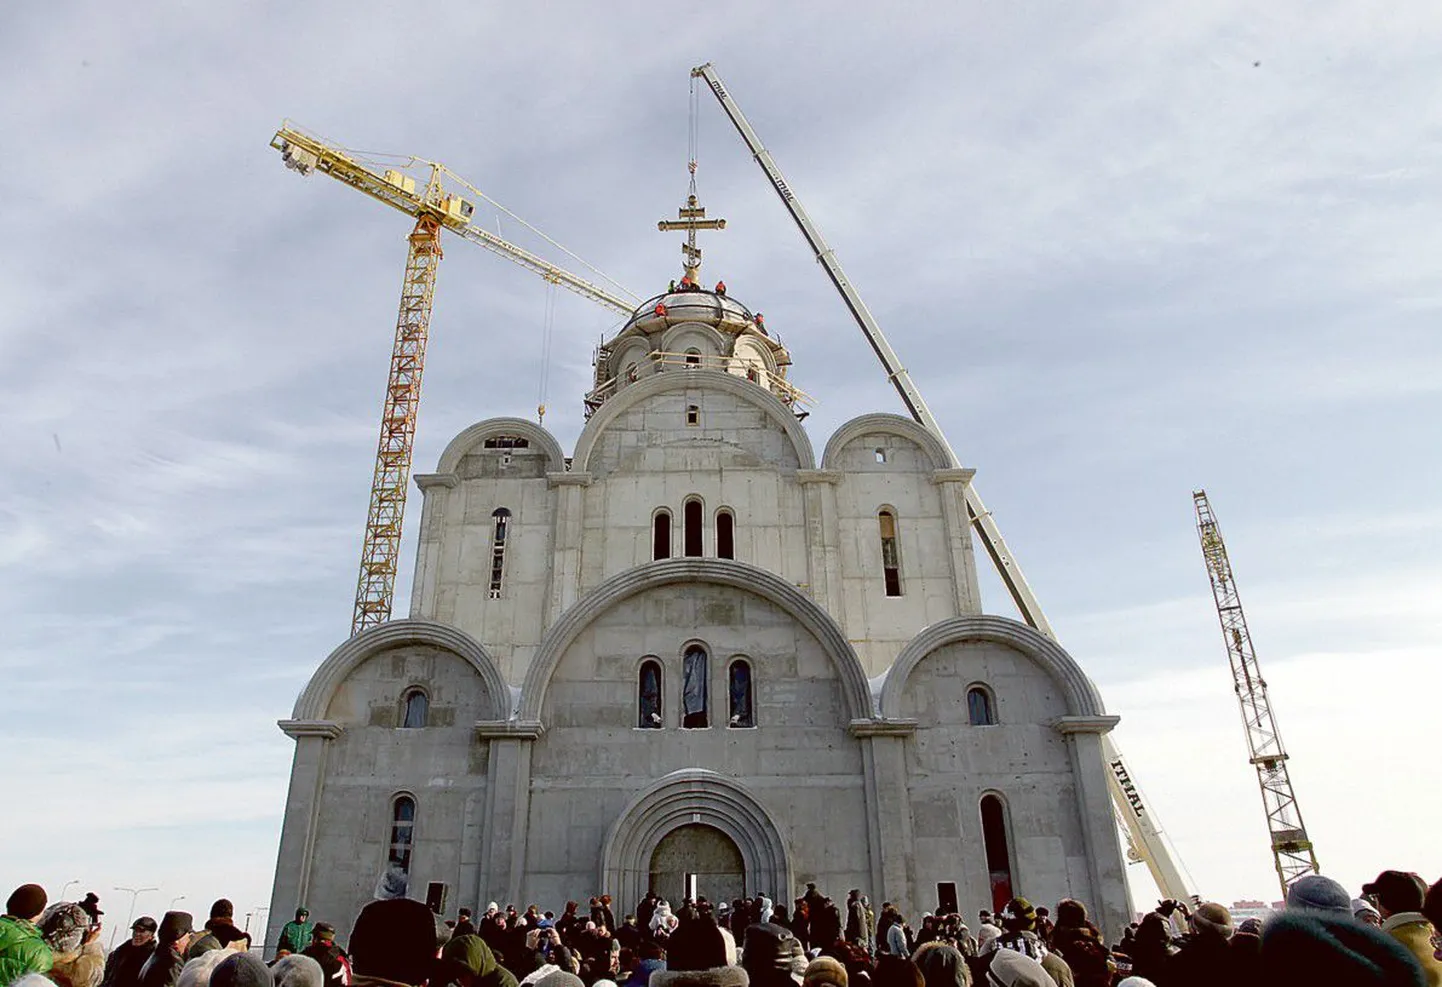 Освящение и воздвижение полуторатонного креста на купол нового храма в Ласнамяэ.